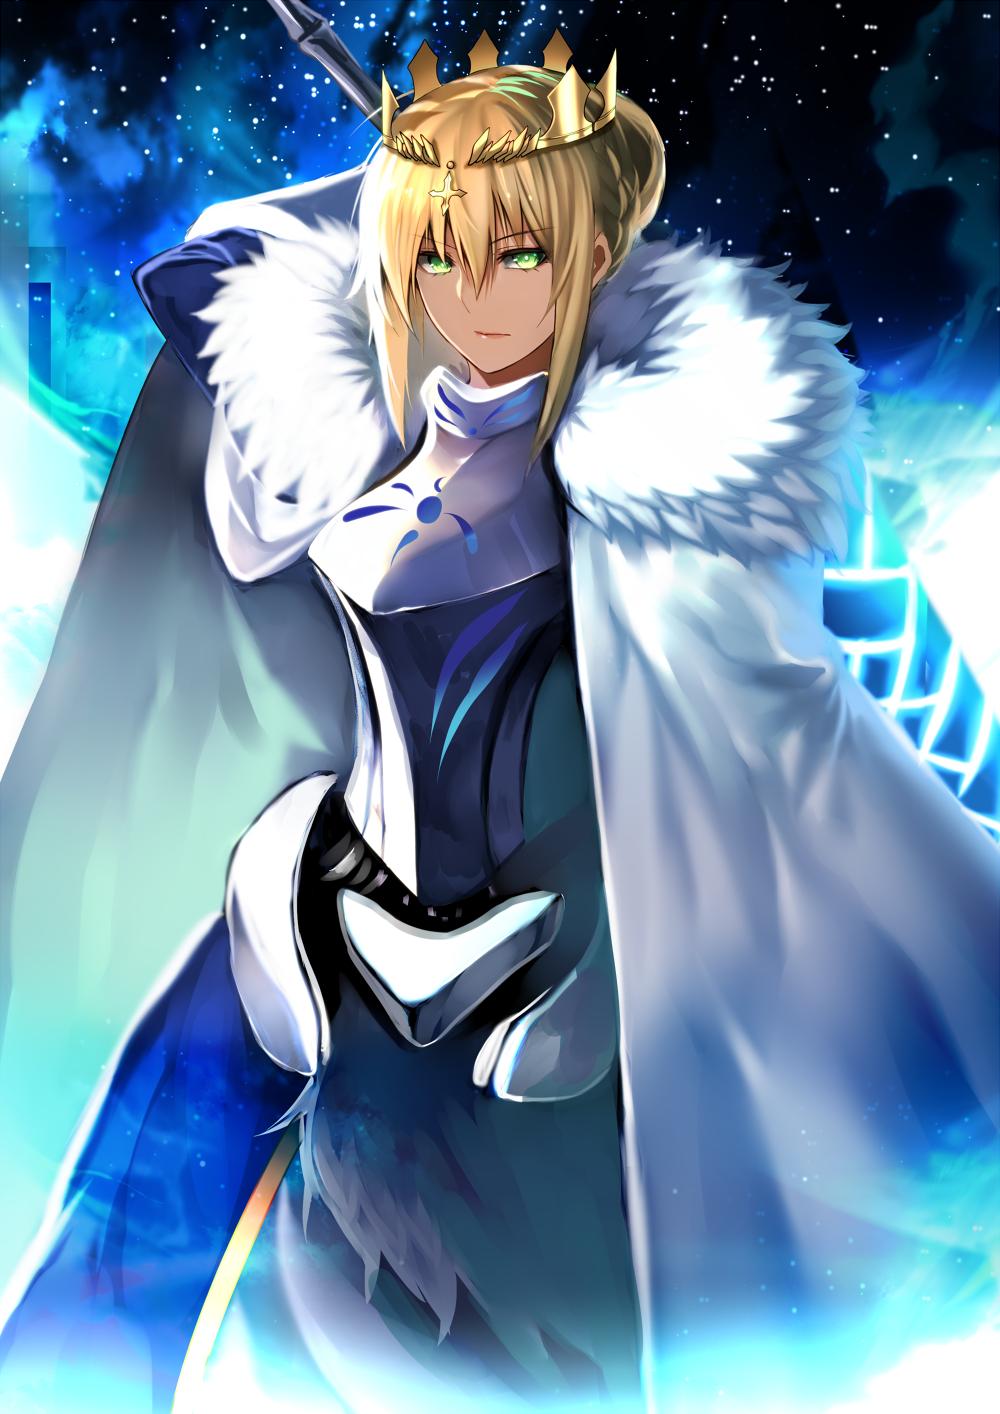 Lancer (Artoria Pendragon) (Fate Stay Night) Wallpaper Anime Image Board